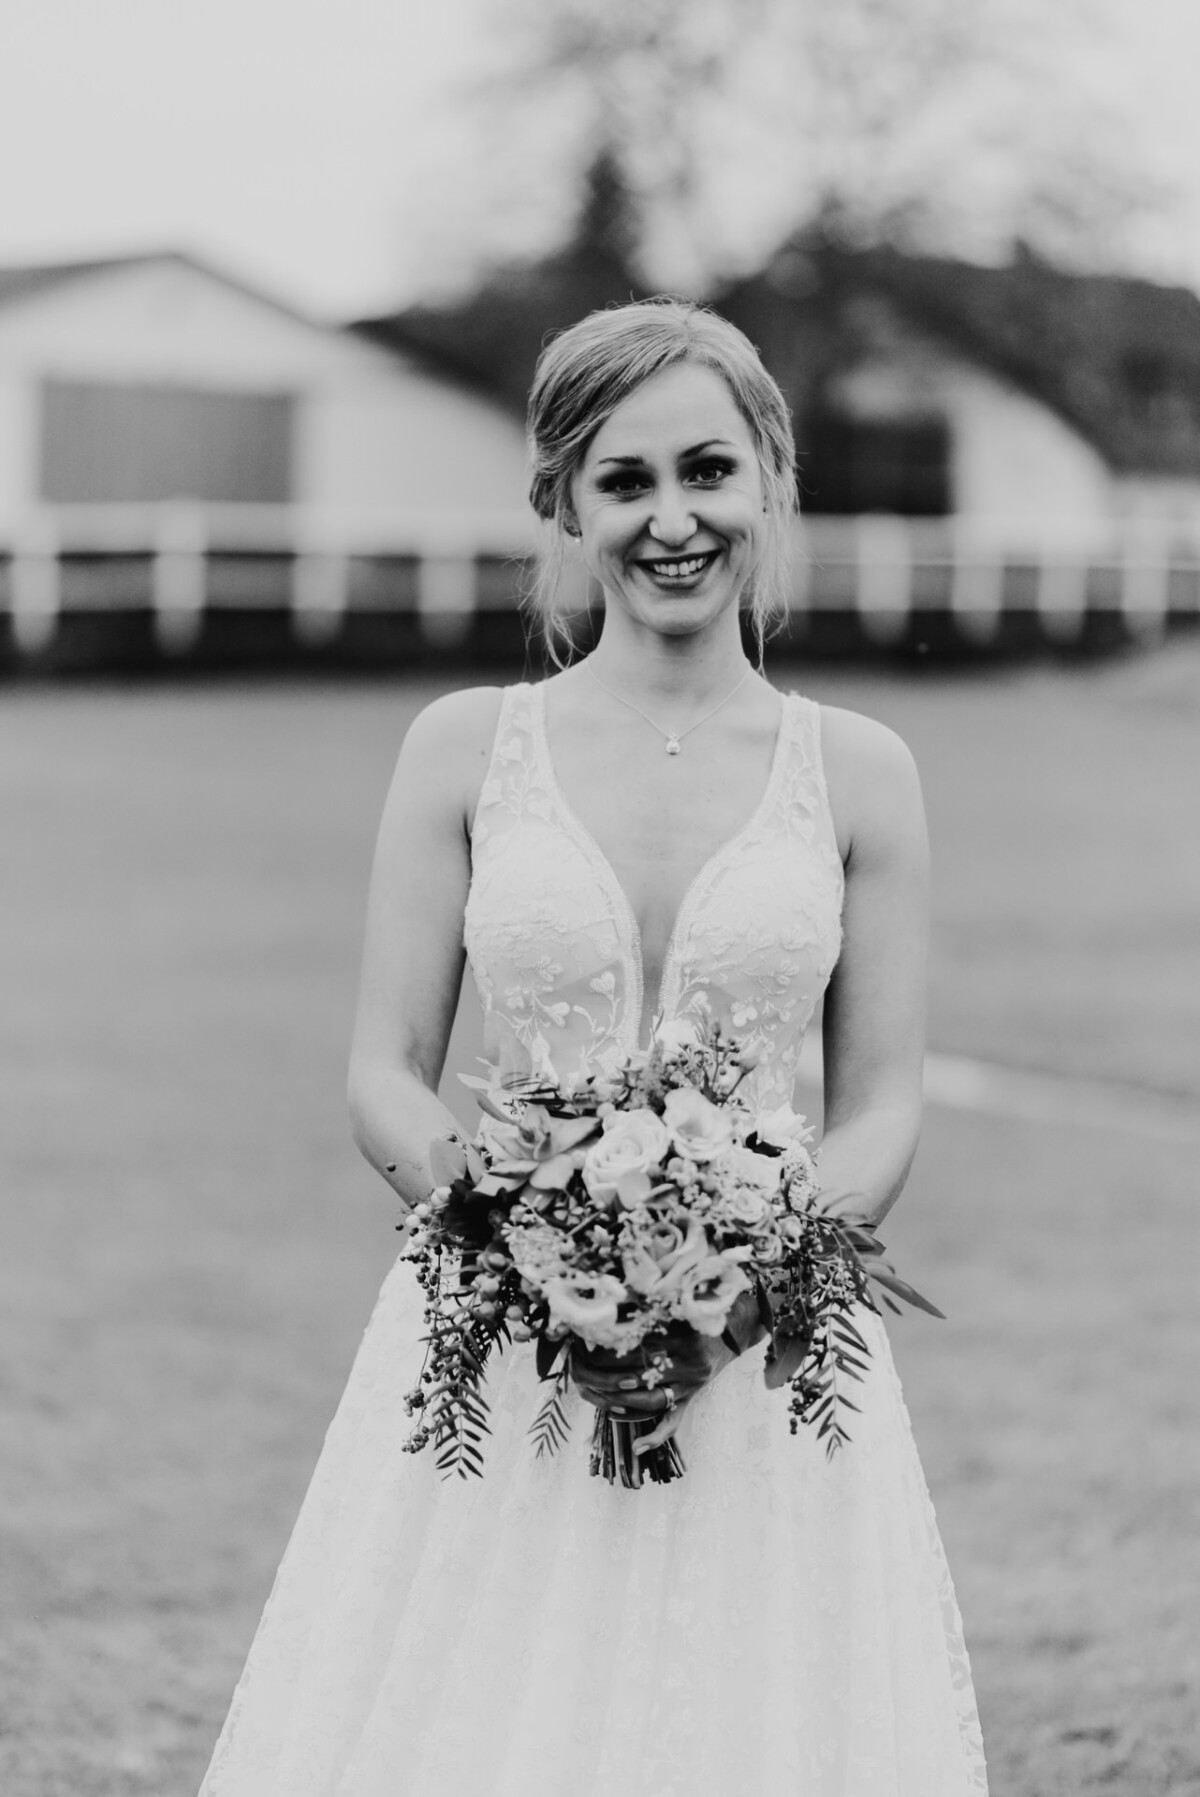 eine Frau in einem Hochzeitskleid, die einen Blumenstrauß hält.